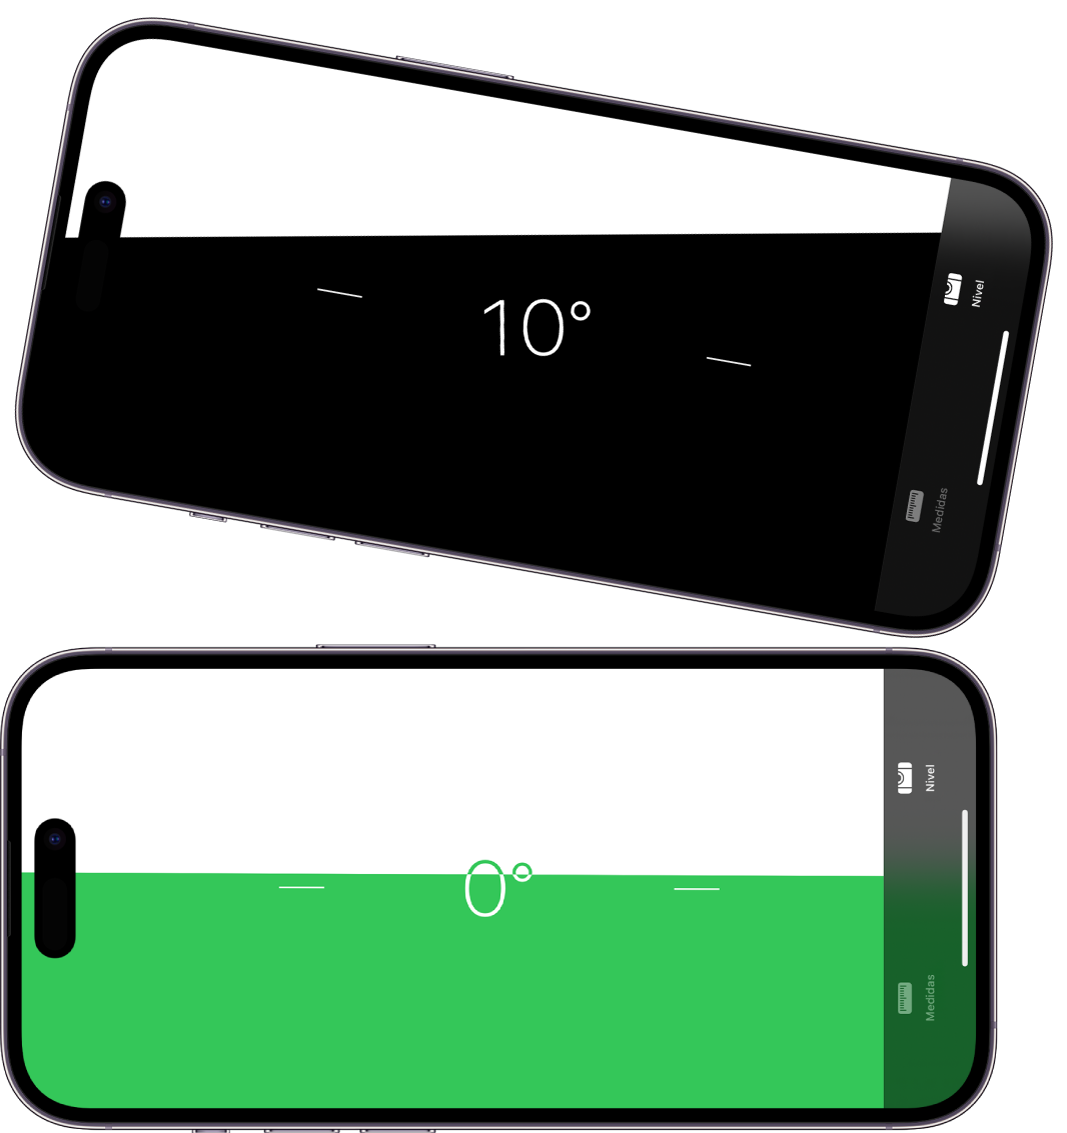 La pantalla de nivel en la app Medidas. Arriba, el iPhone está inclinado con un ángulo de diez grados; abajo, el iPhone está nivelado.